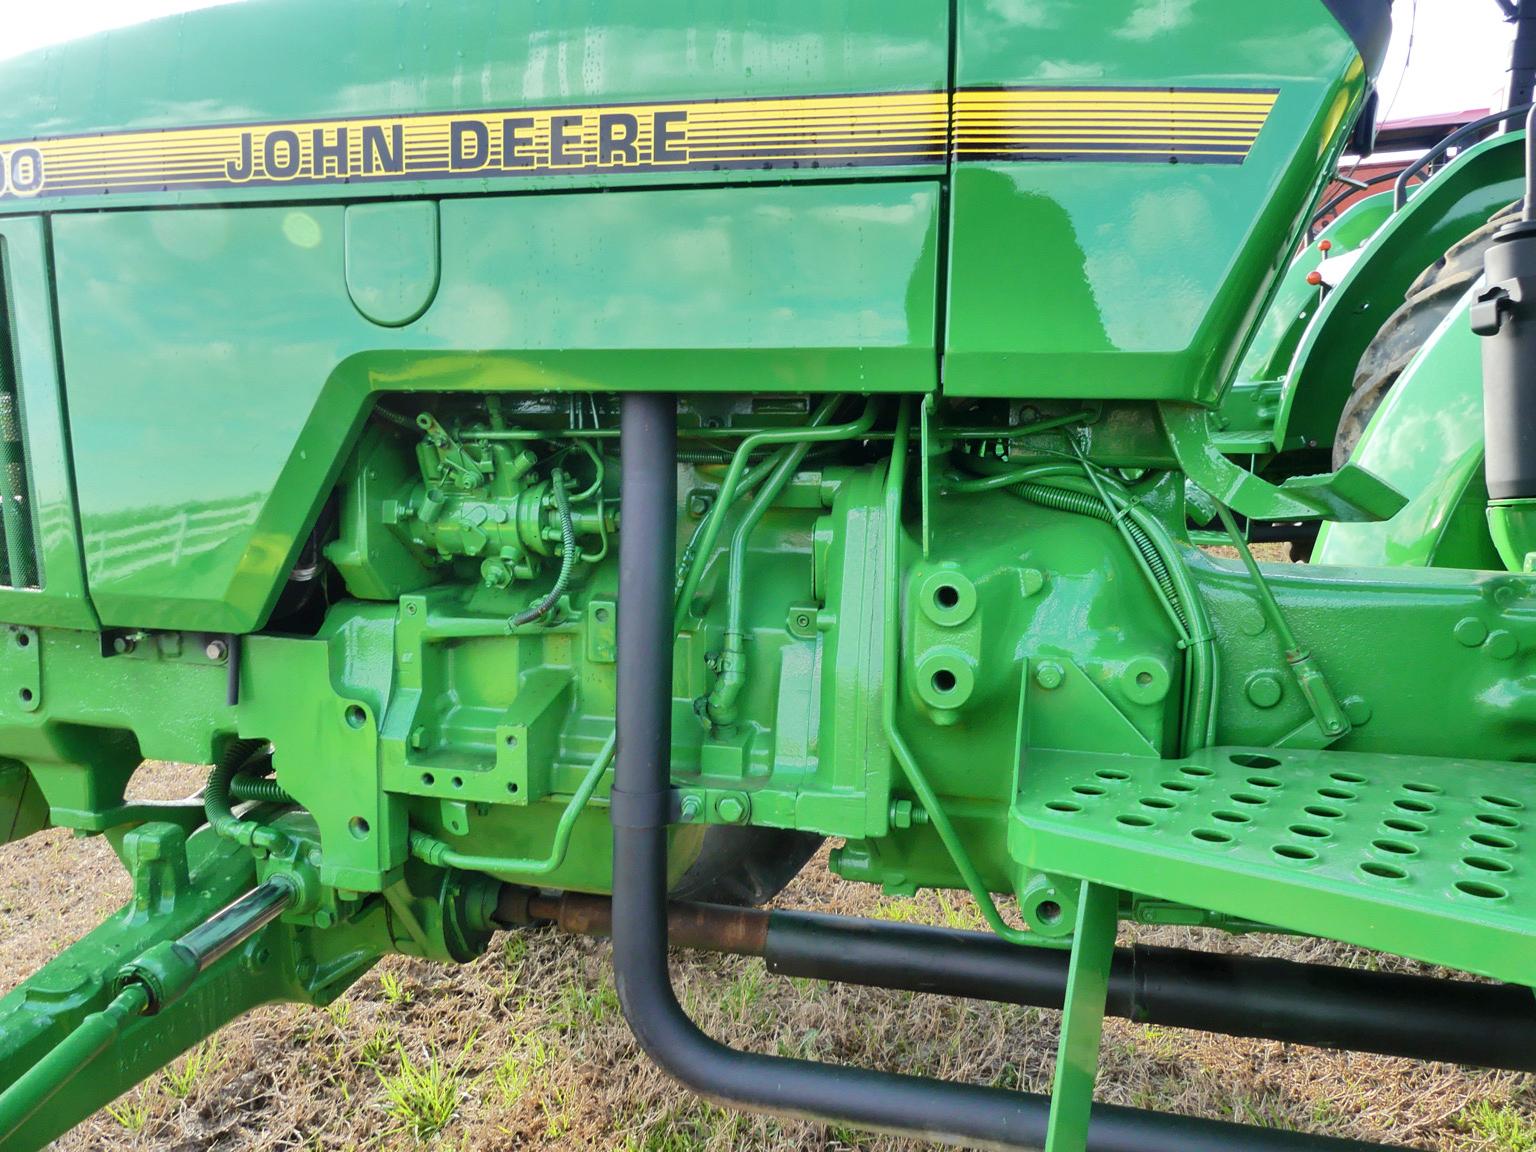 John Deere 5400 MFWD Tractor, s/n LV5400E642805: Meter Shows 8749 hrs